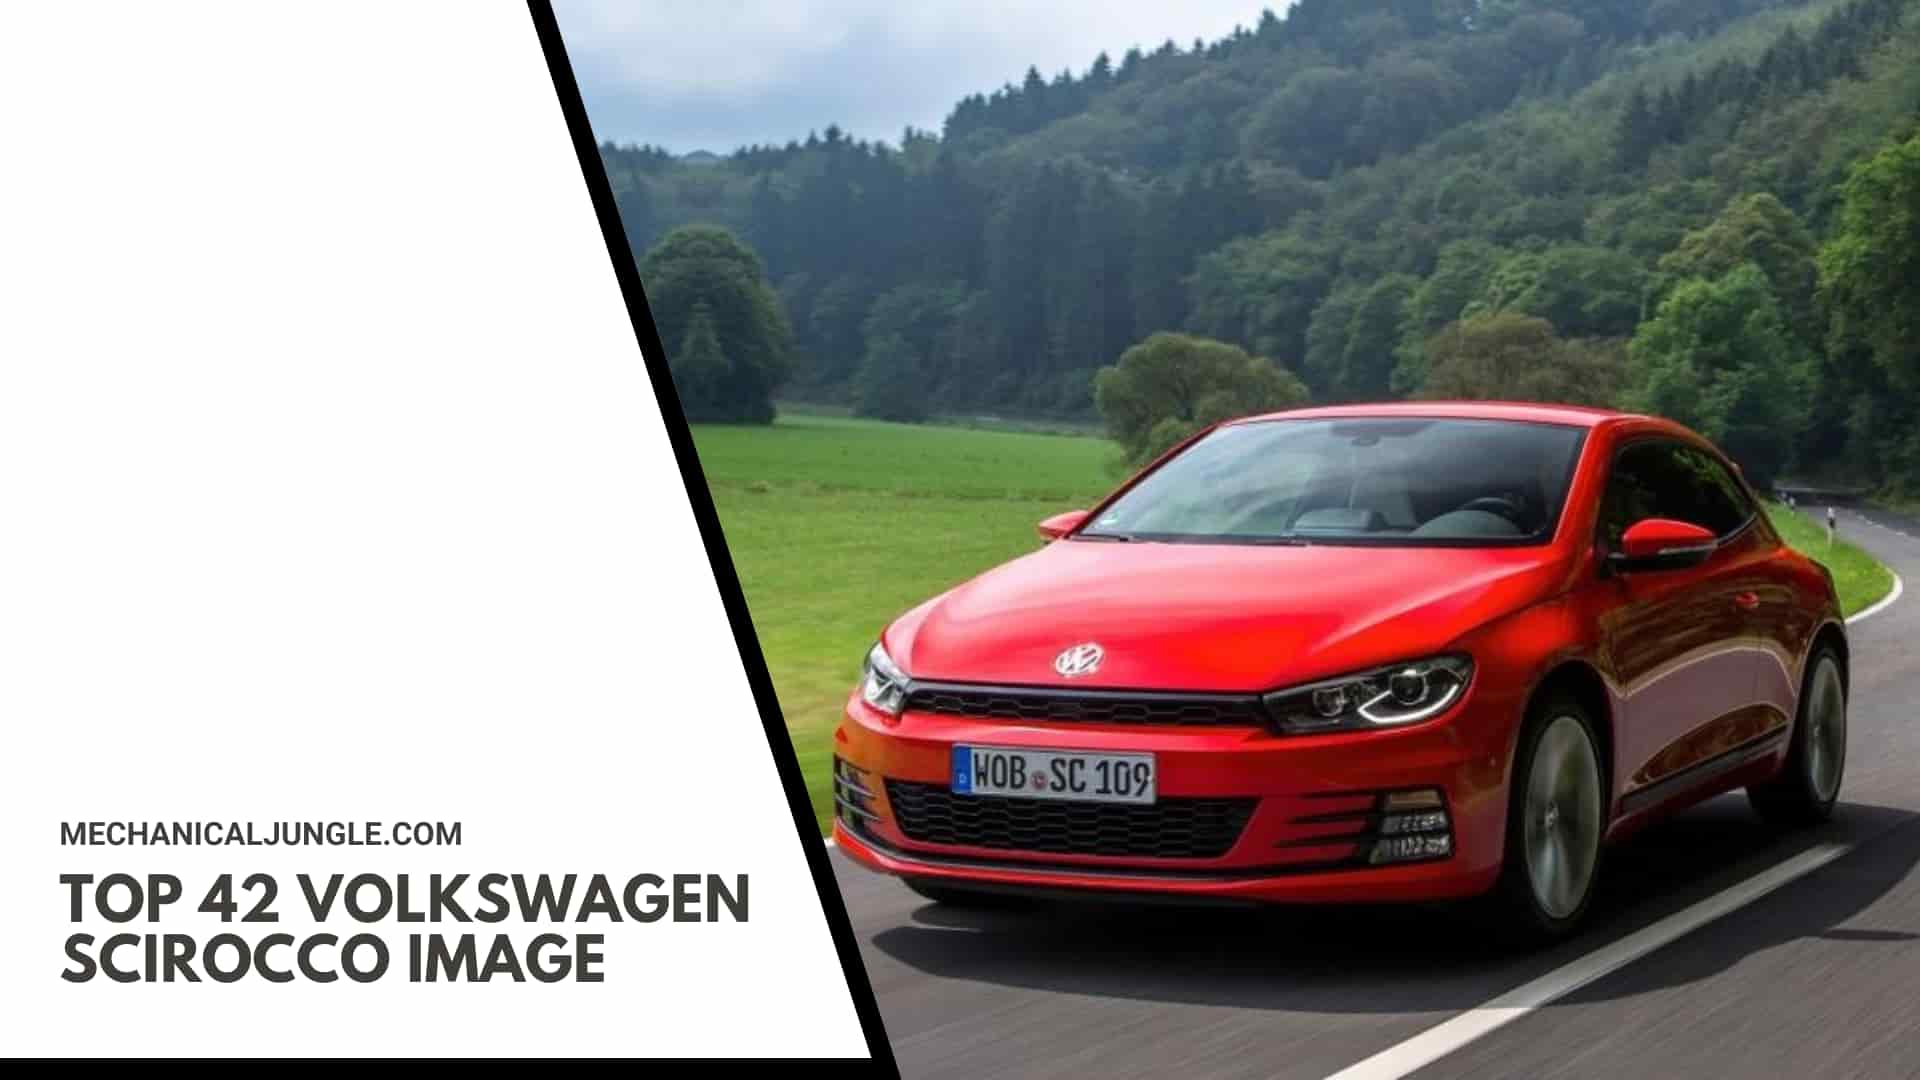 Top 42 Volkswagen Scirocco Image